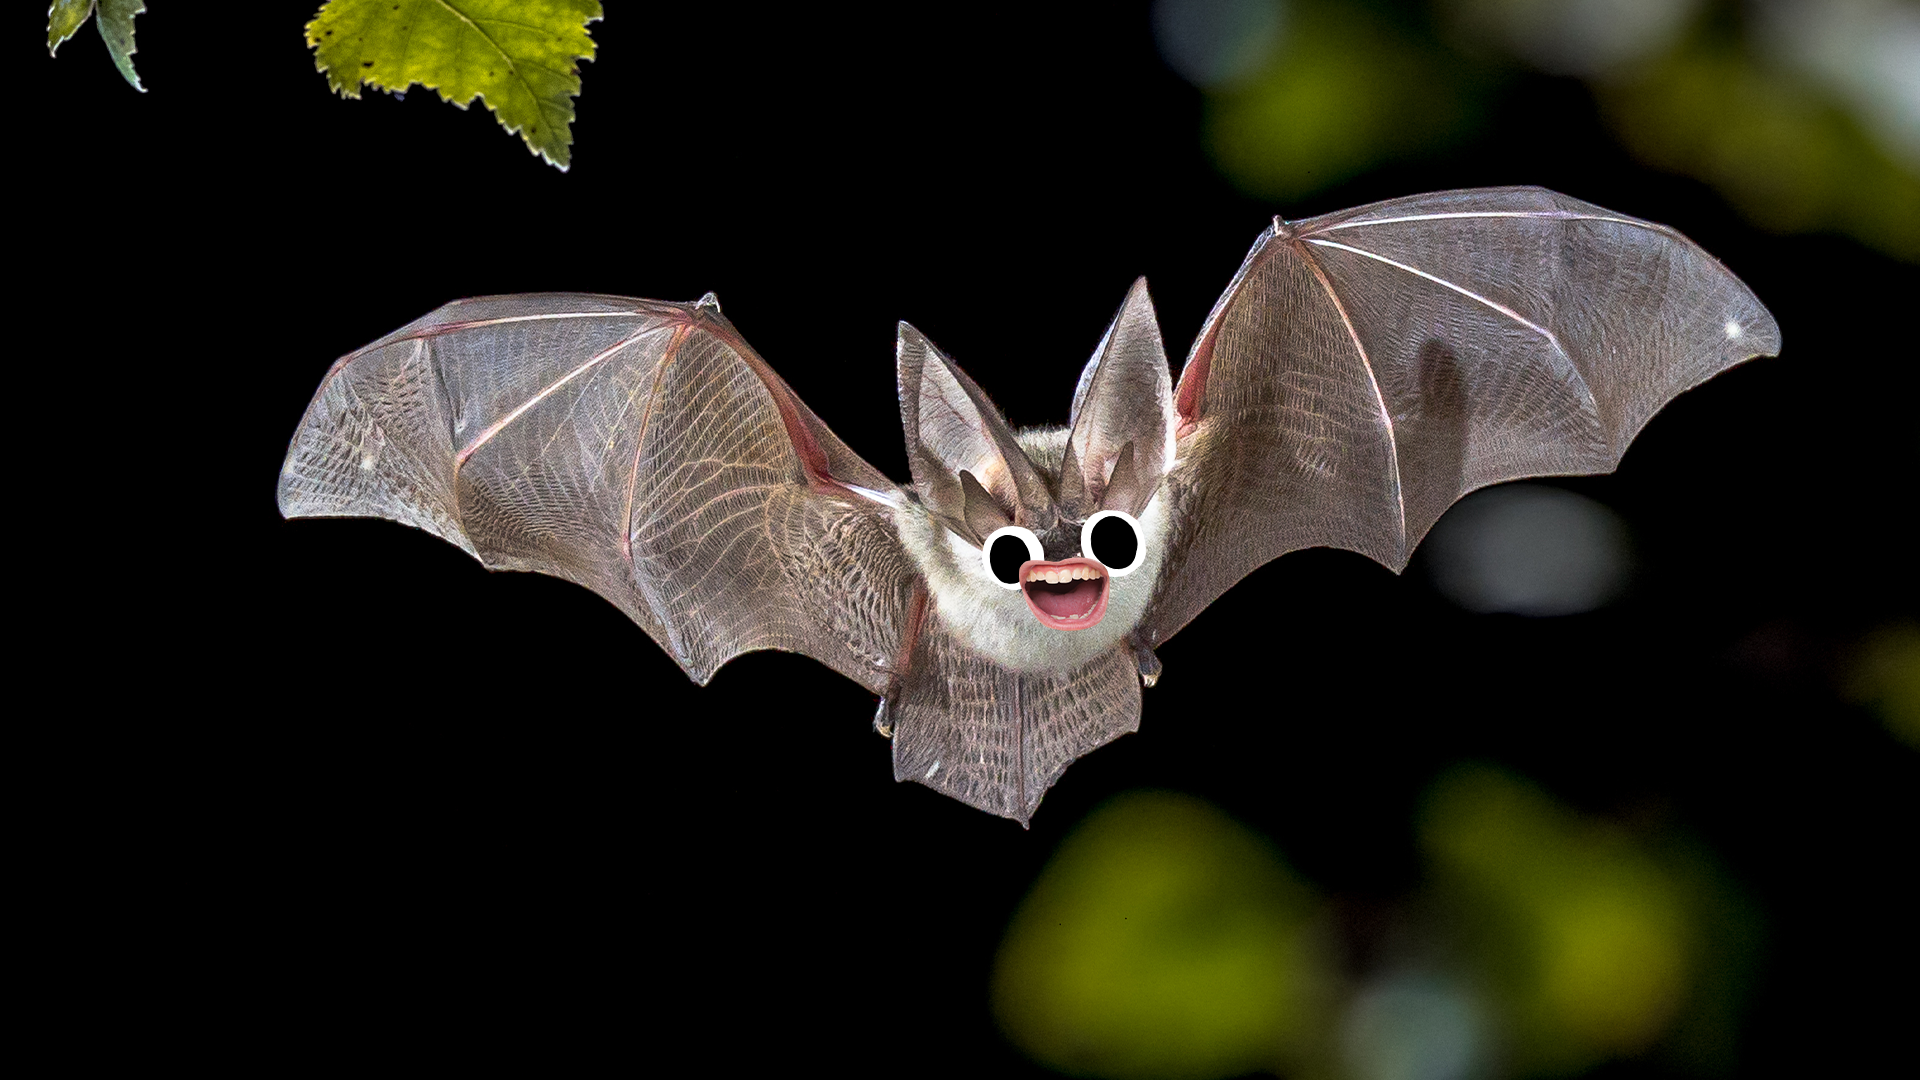 Goofy looking bat